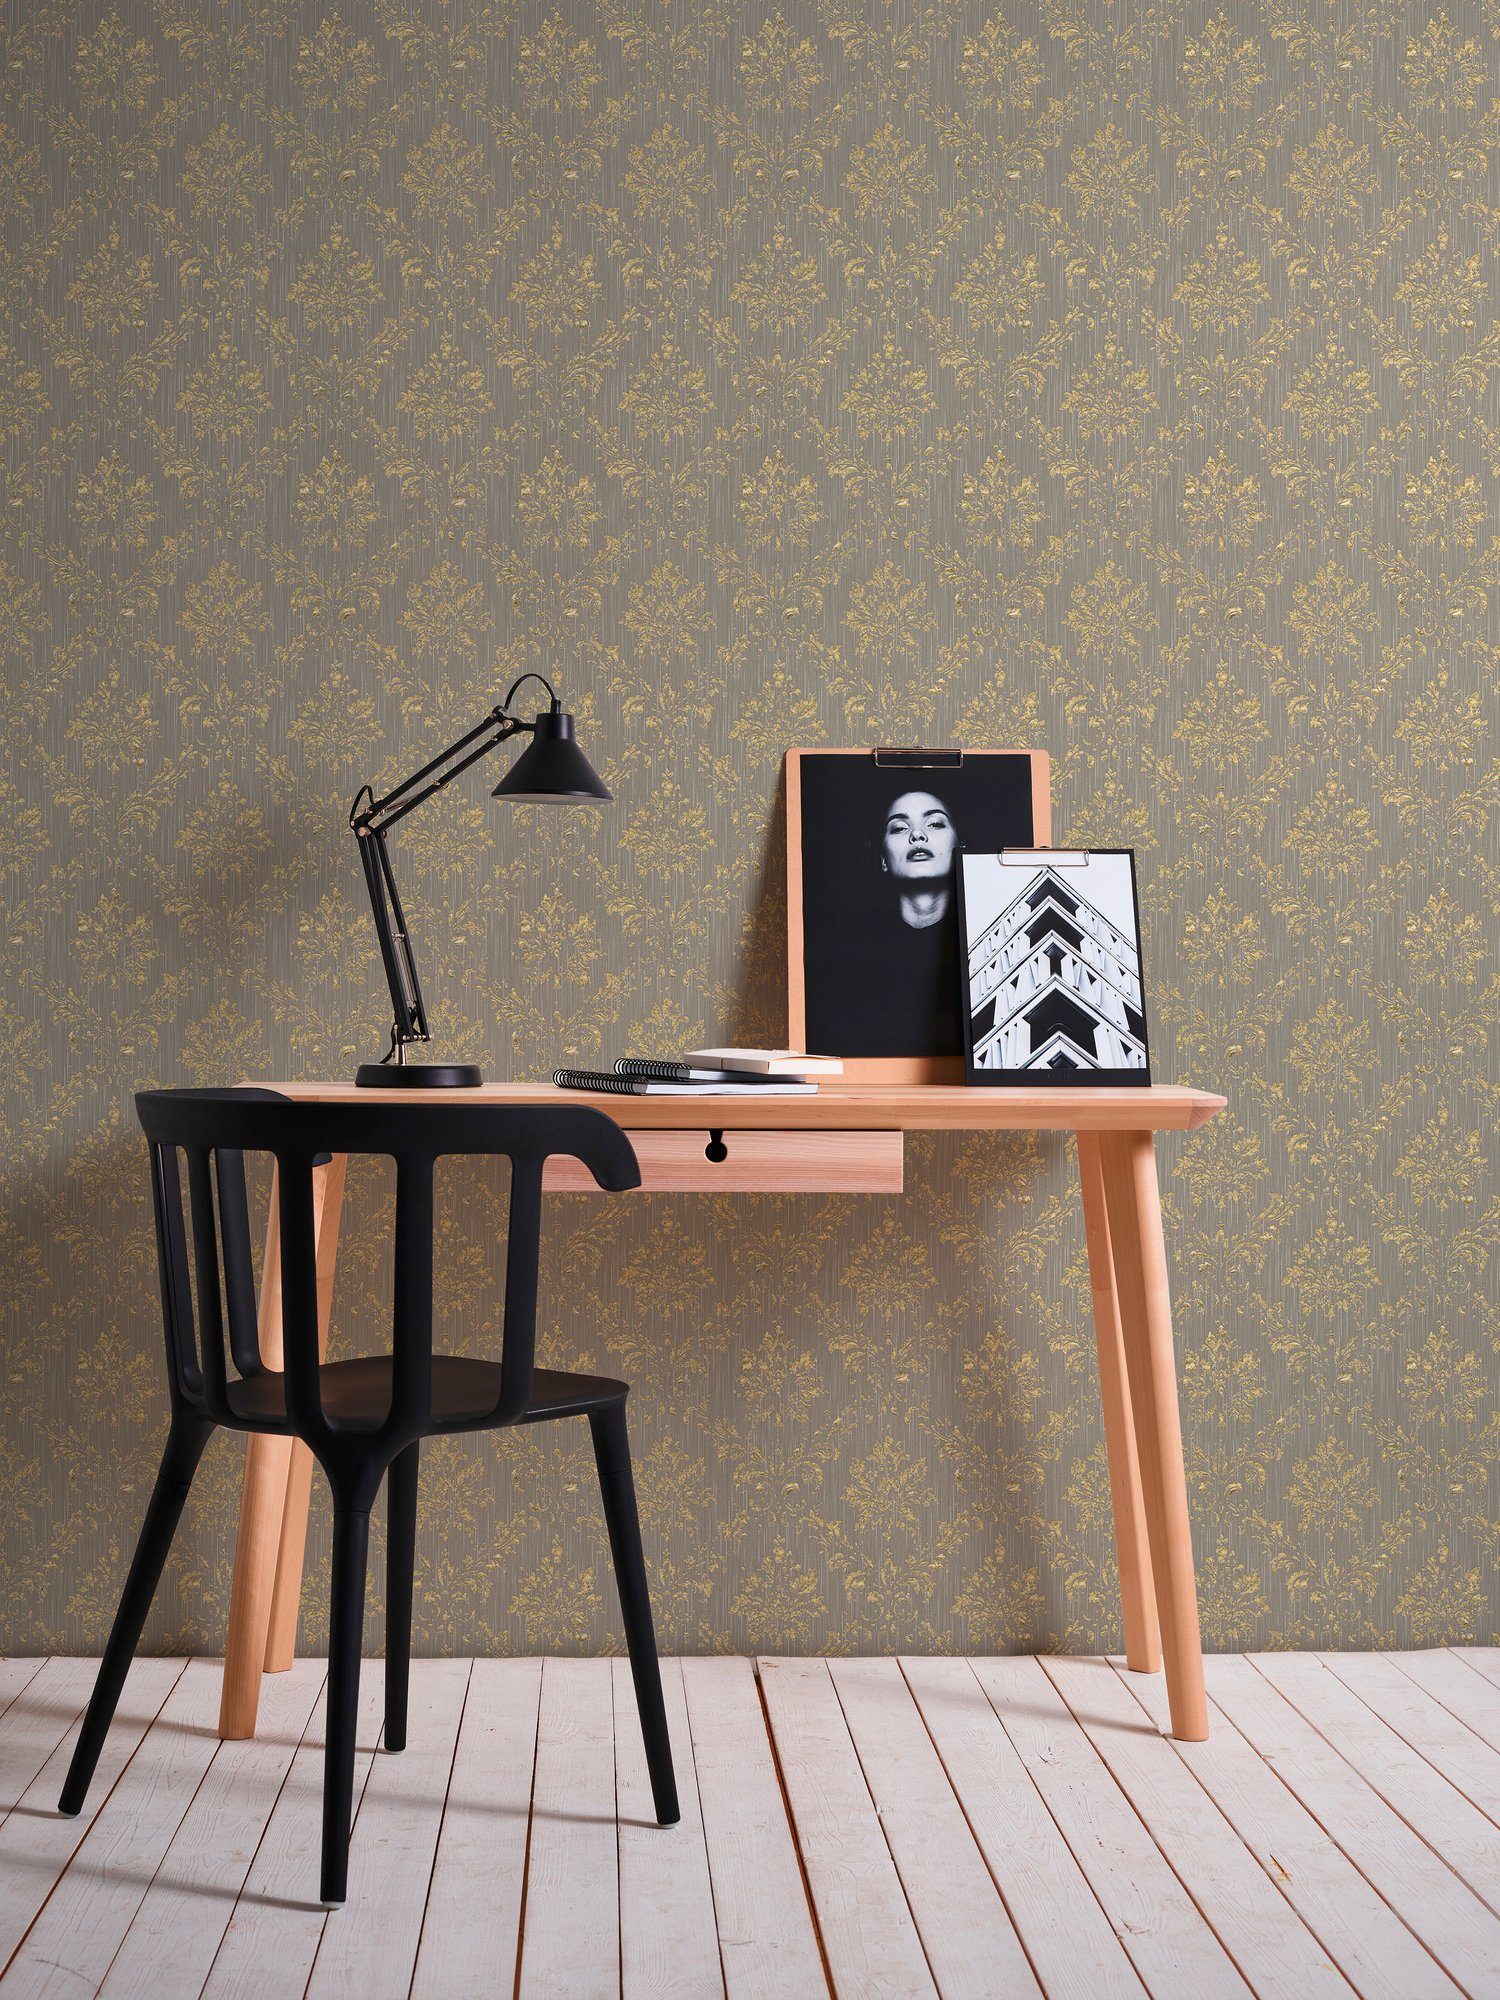 Barock, gold/beige Architects Ornament Textiltapete samtig, Paper Metallic Barock Silk, Création matt, glänzend, Tapete A.S.